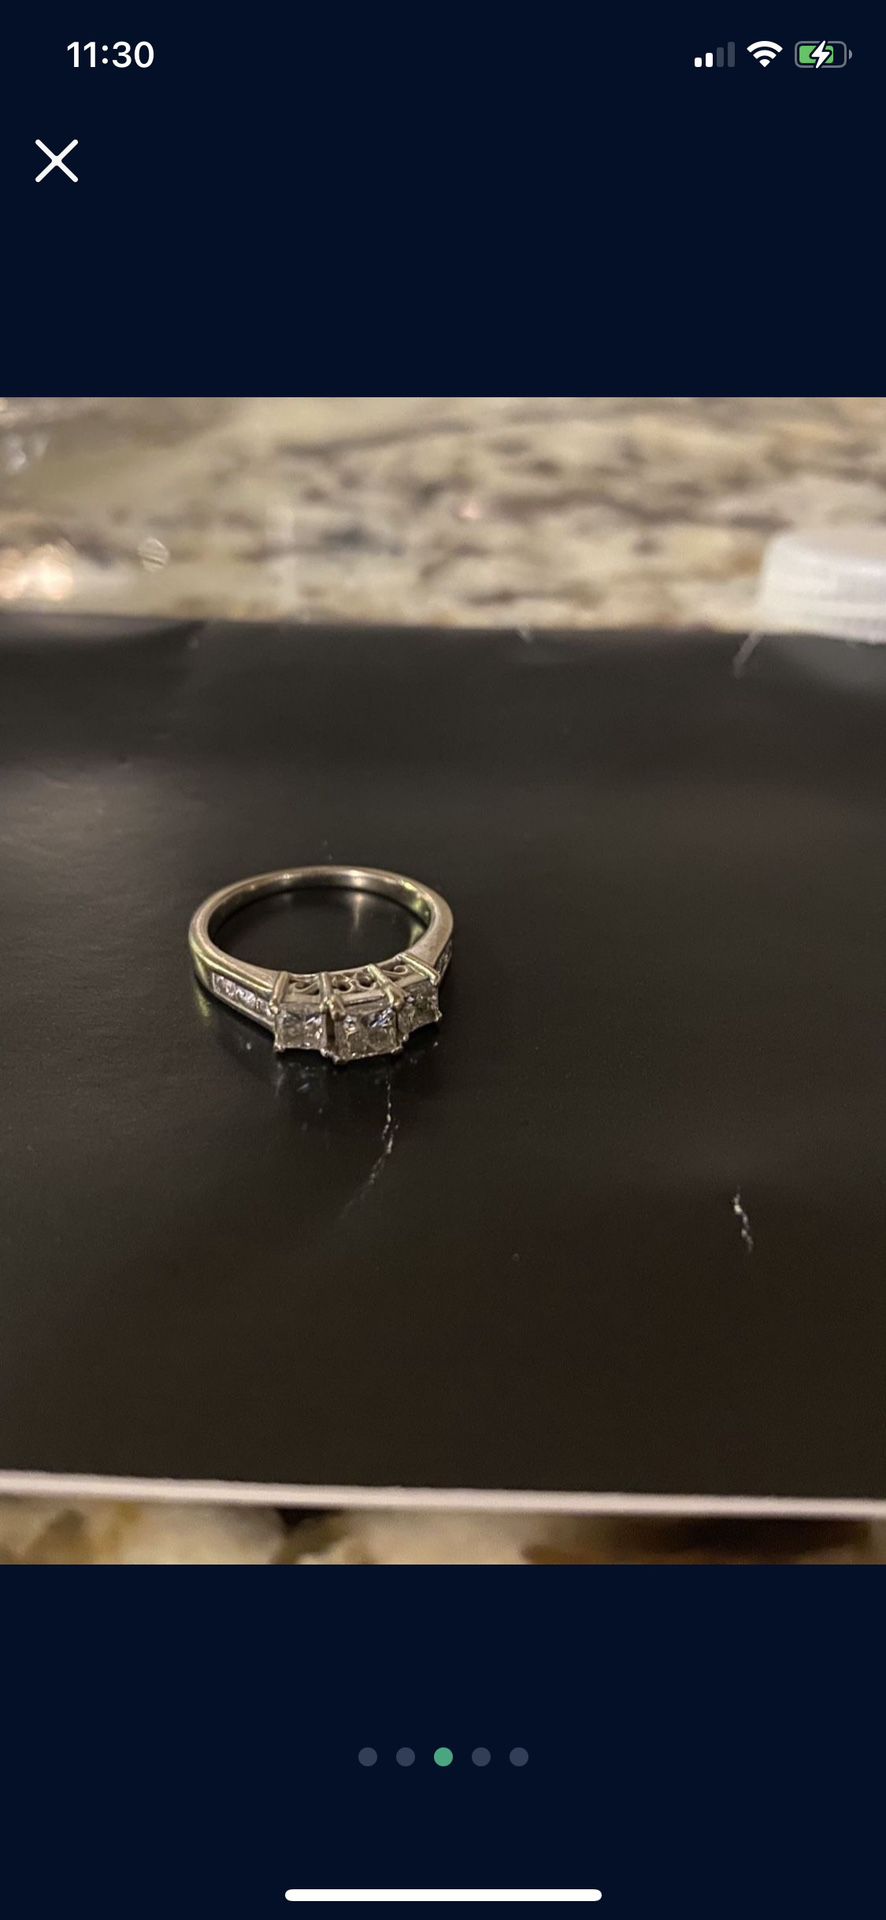 3 Stone Diamond ring 